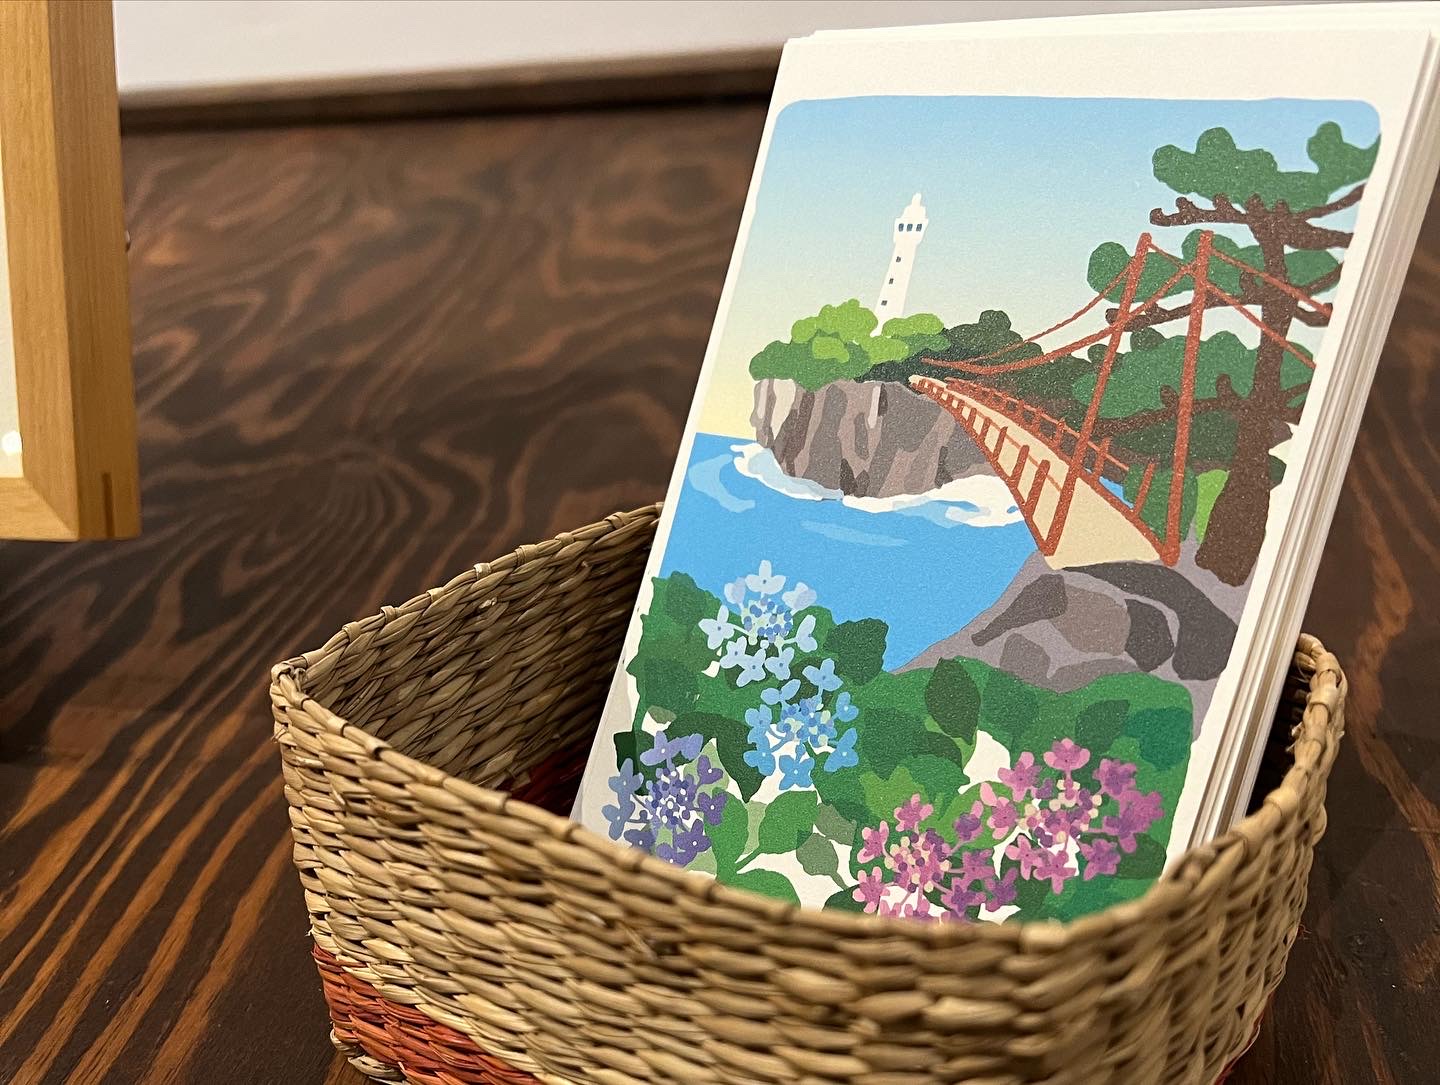 デザイナー・sawako koyamaさんの城ヶ崎のポストカード。売上はりんがふらんか(無料ギャラリー)の運営資金に充てられるとのことです。